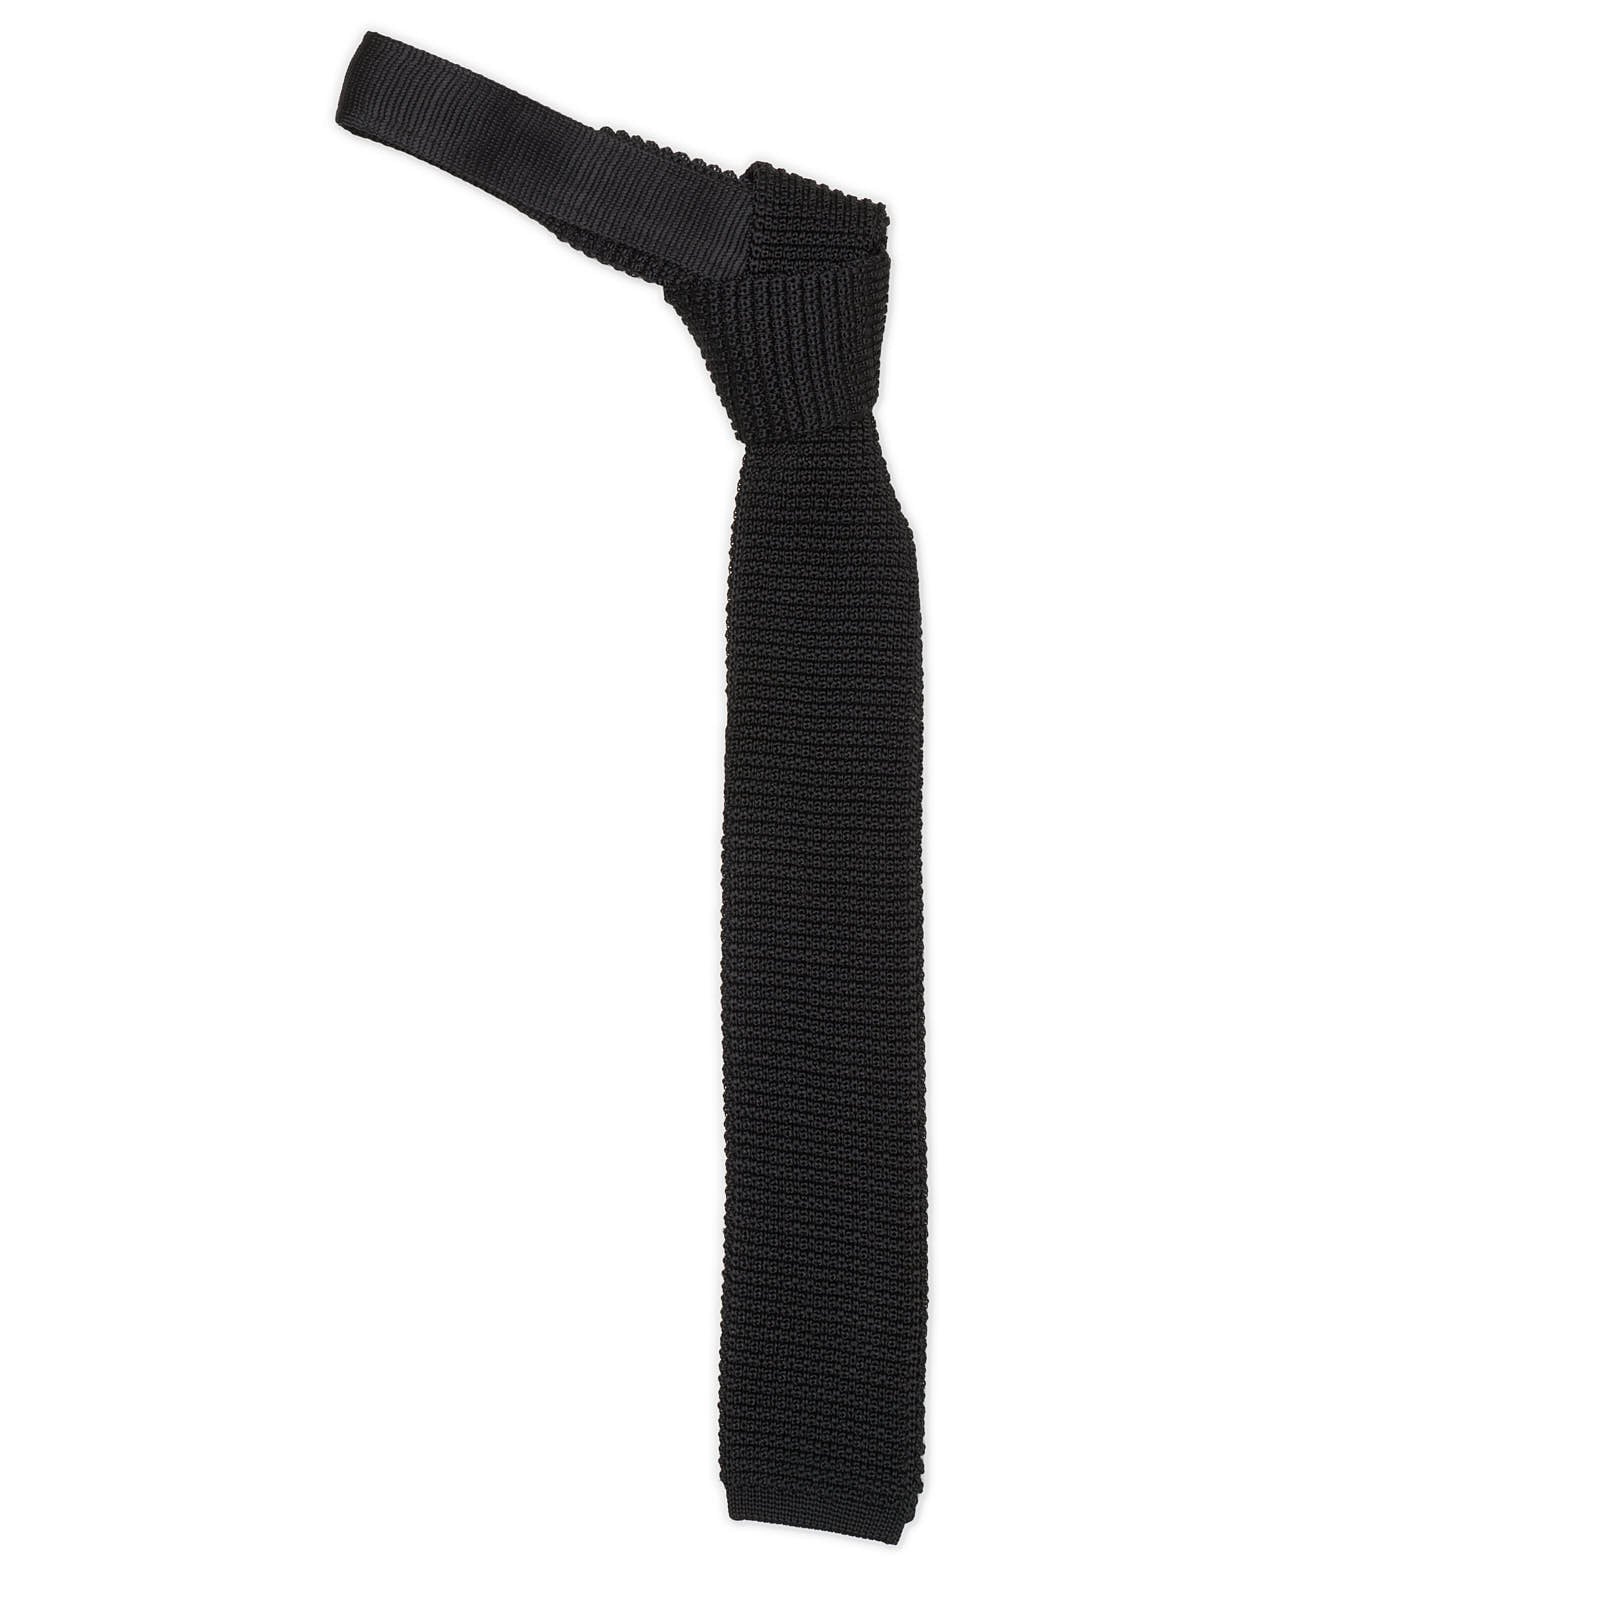 MATTABISCH Black Silk Knit Tie NEW